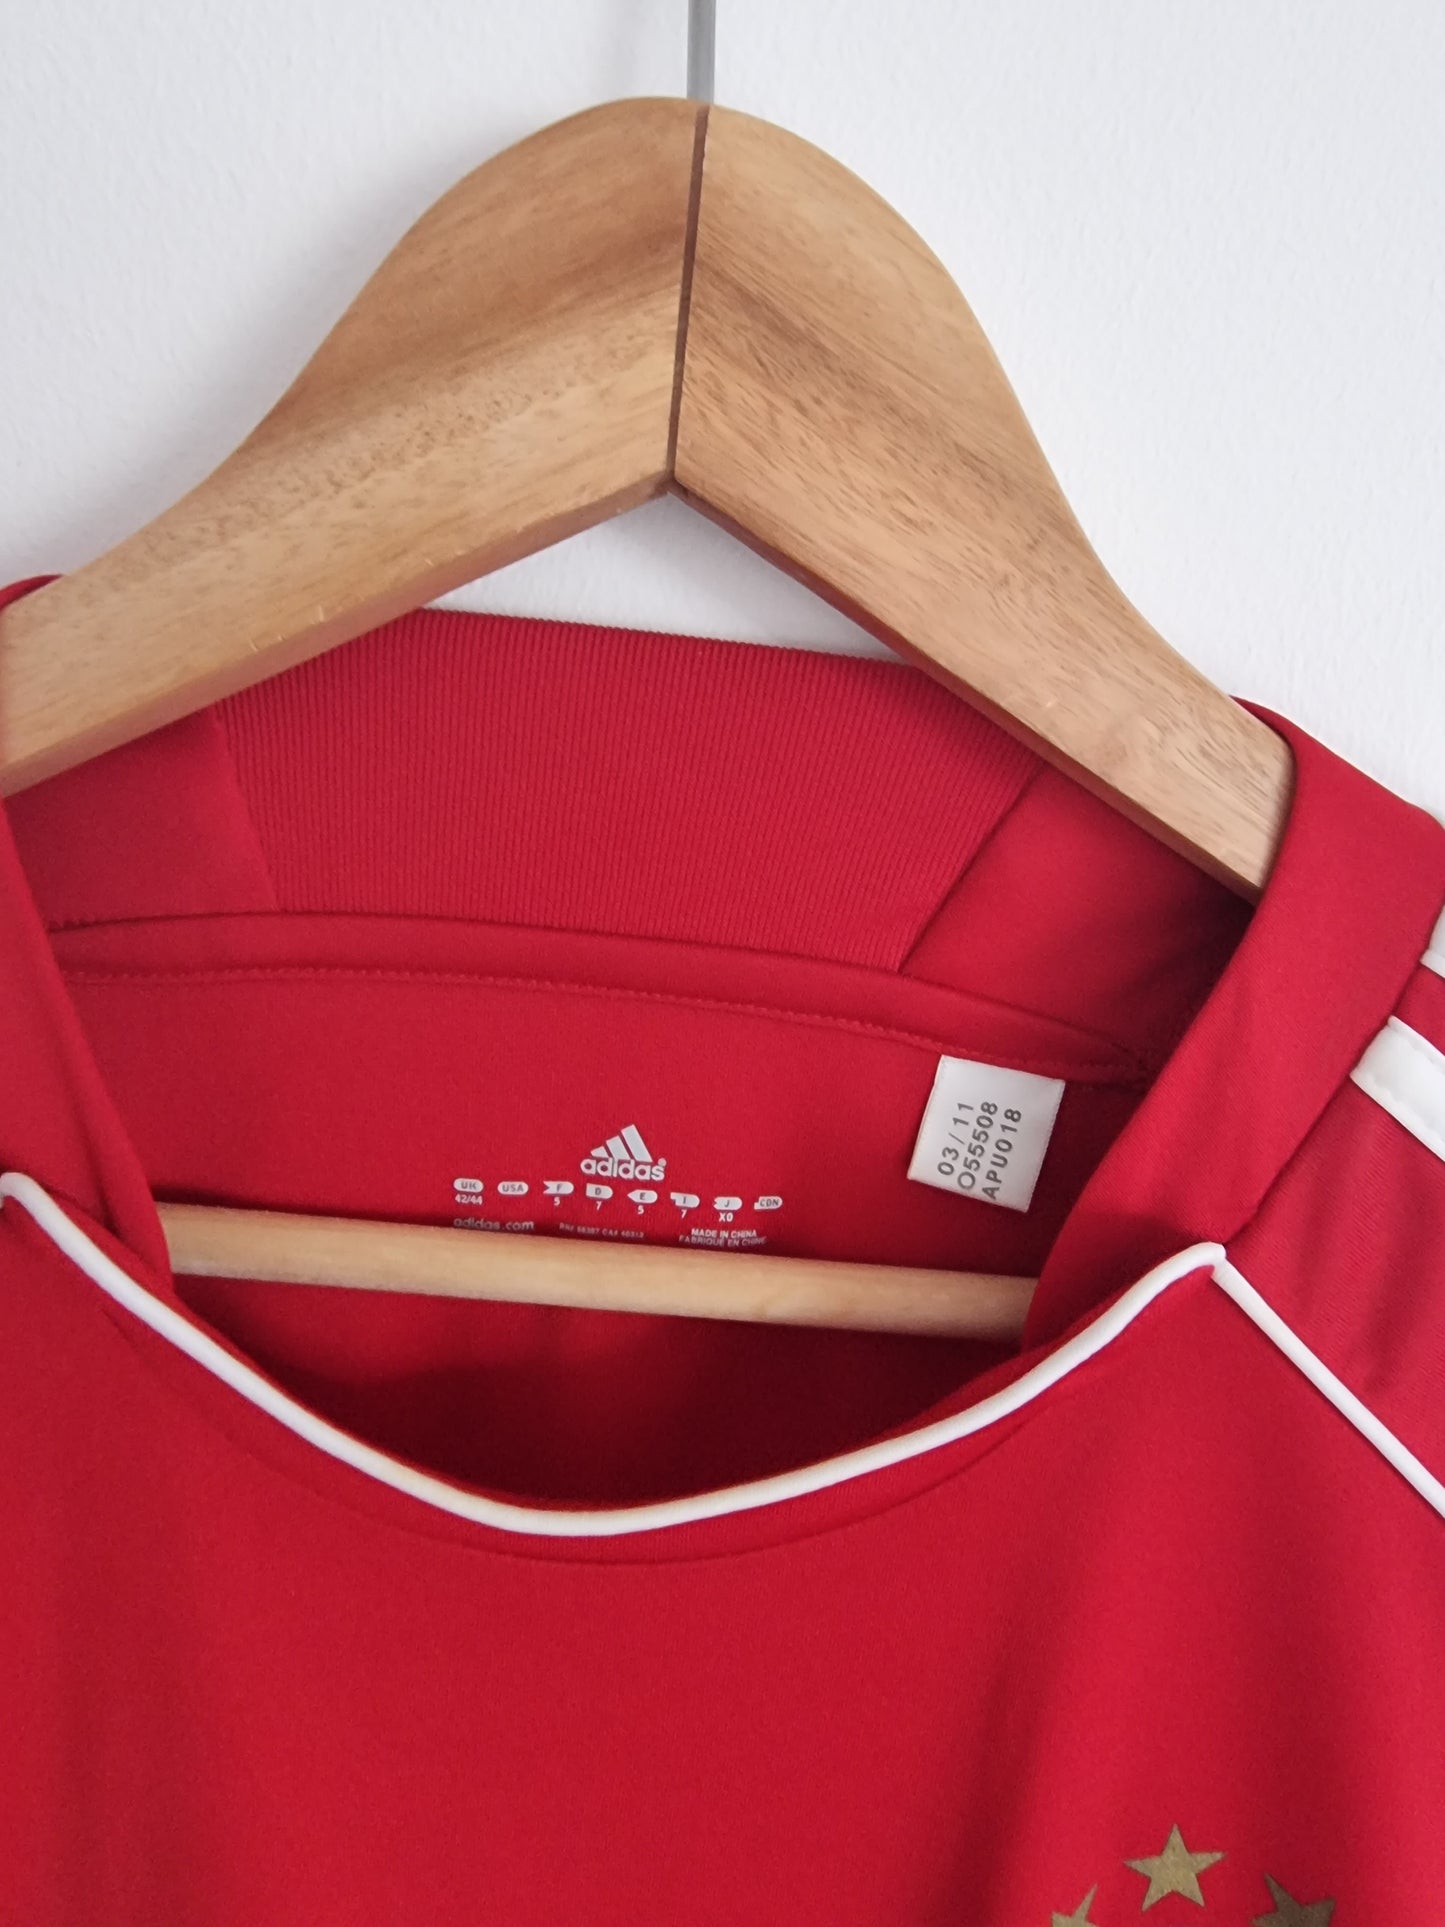 Adidas Bayern Munich 10/11 Training Shirt Large